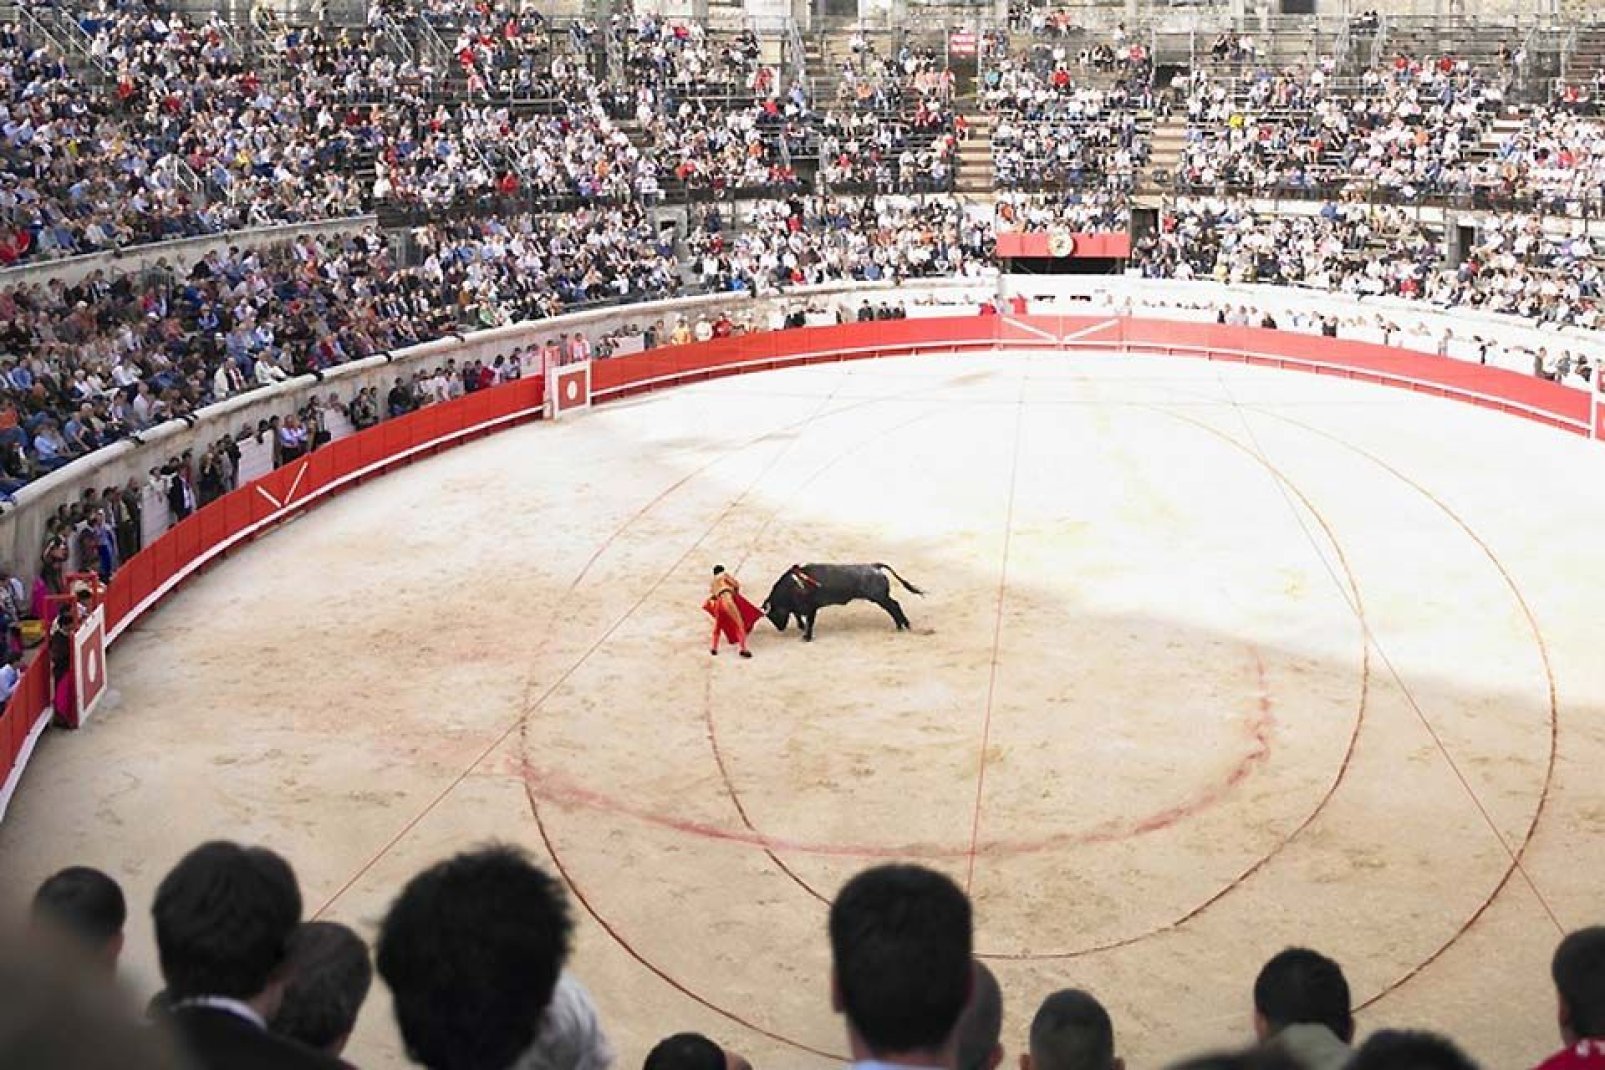 La corrida è una vera e propria istituzione nella città di Nîmes. Nell'arena di Nîmes gli spettacoli vengono proposti regolarmente.